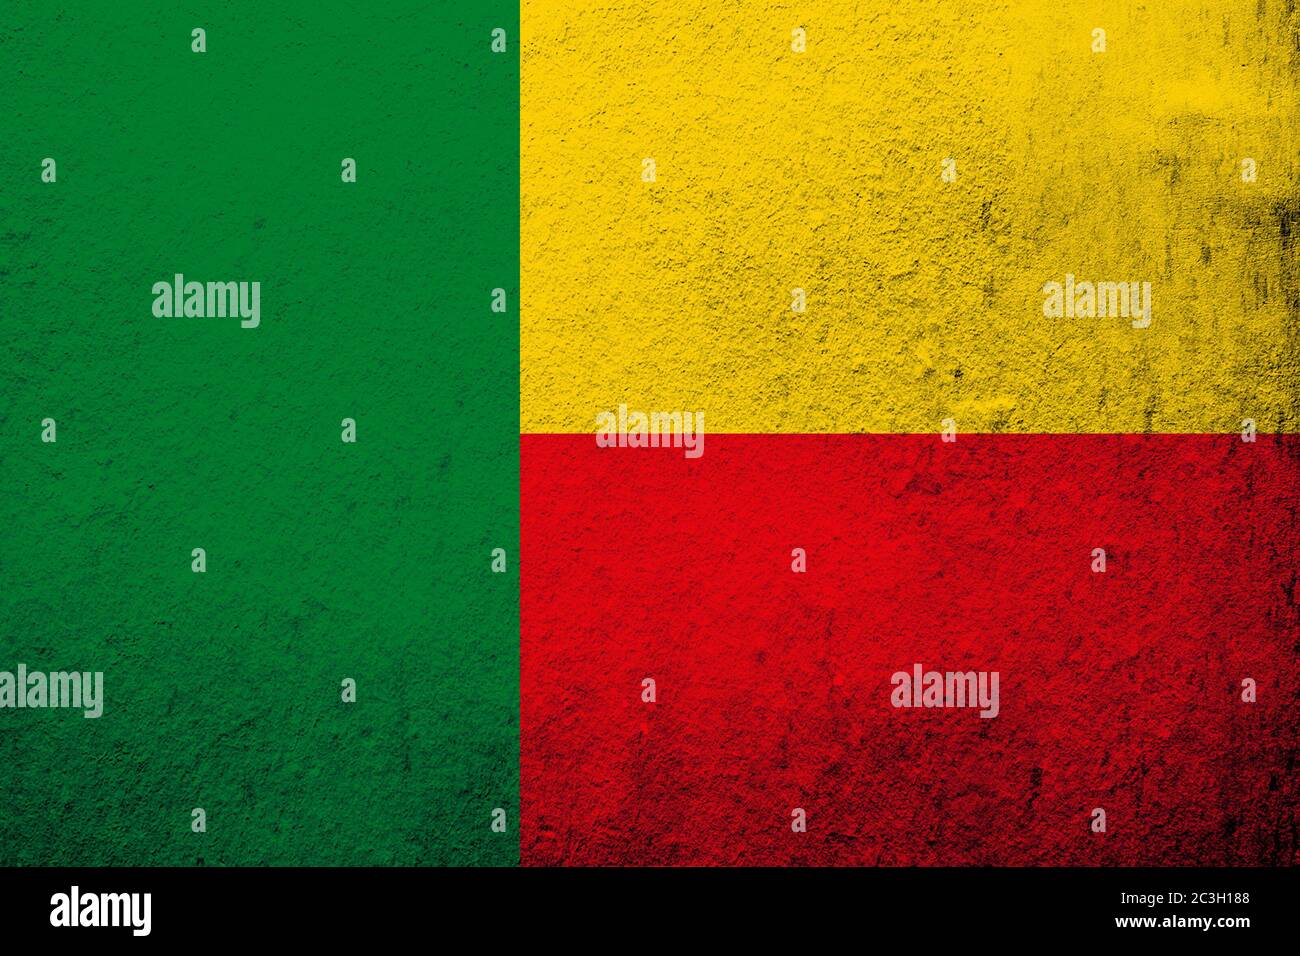 Republic of Benin National flag. Grunge background Stock Photo